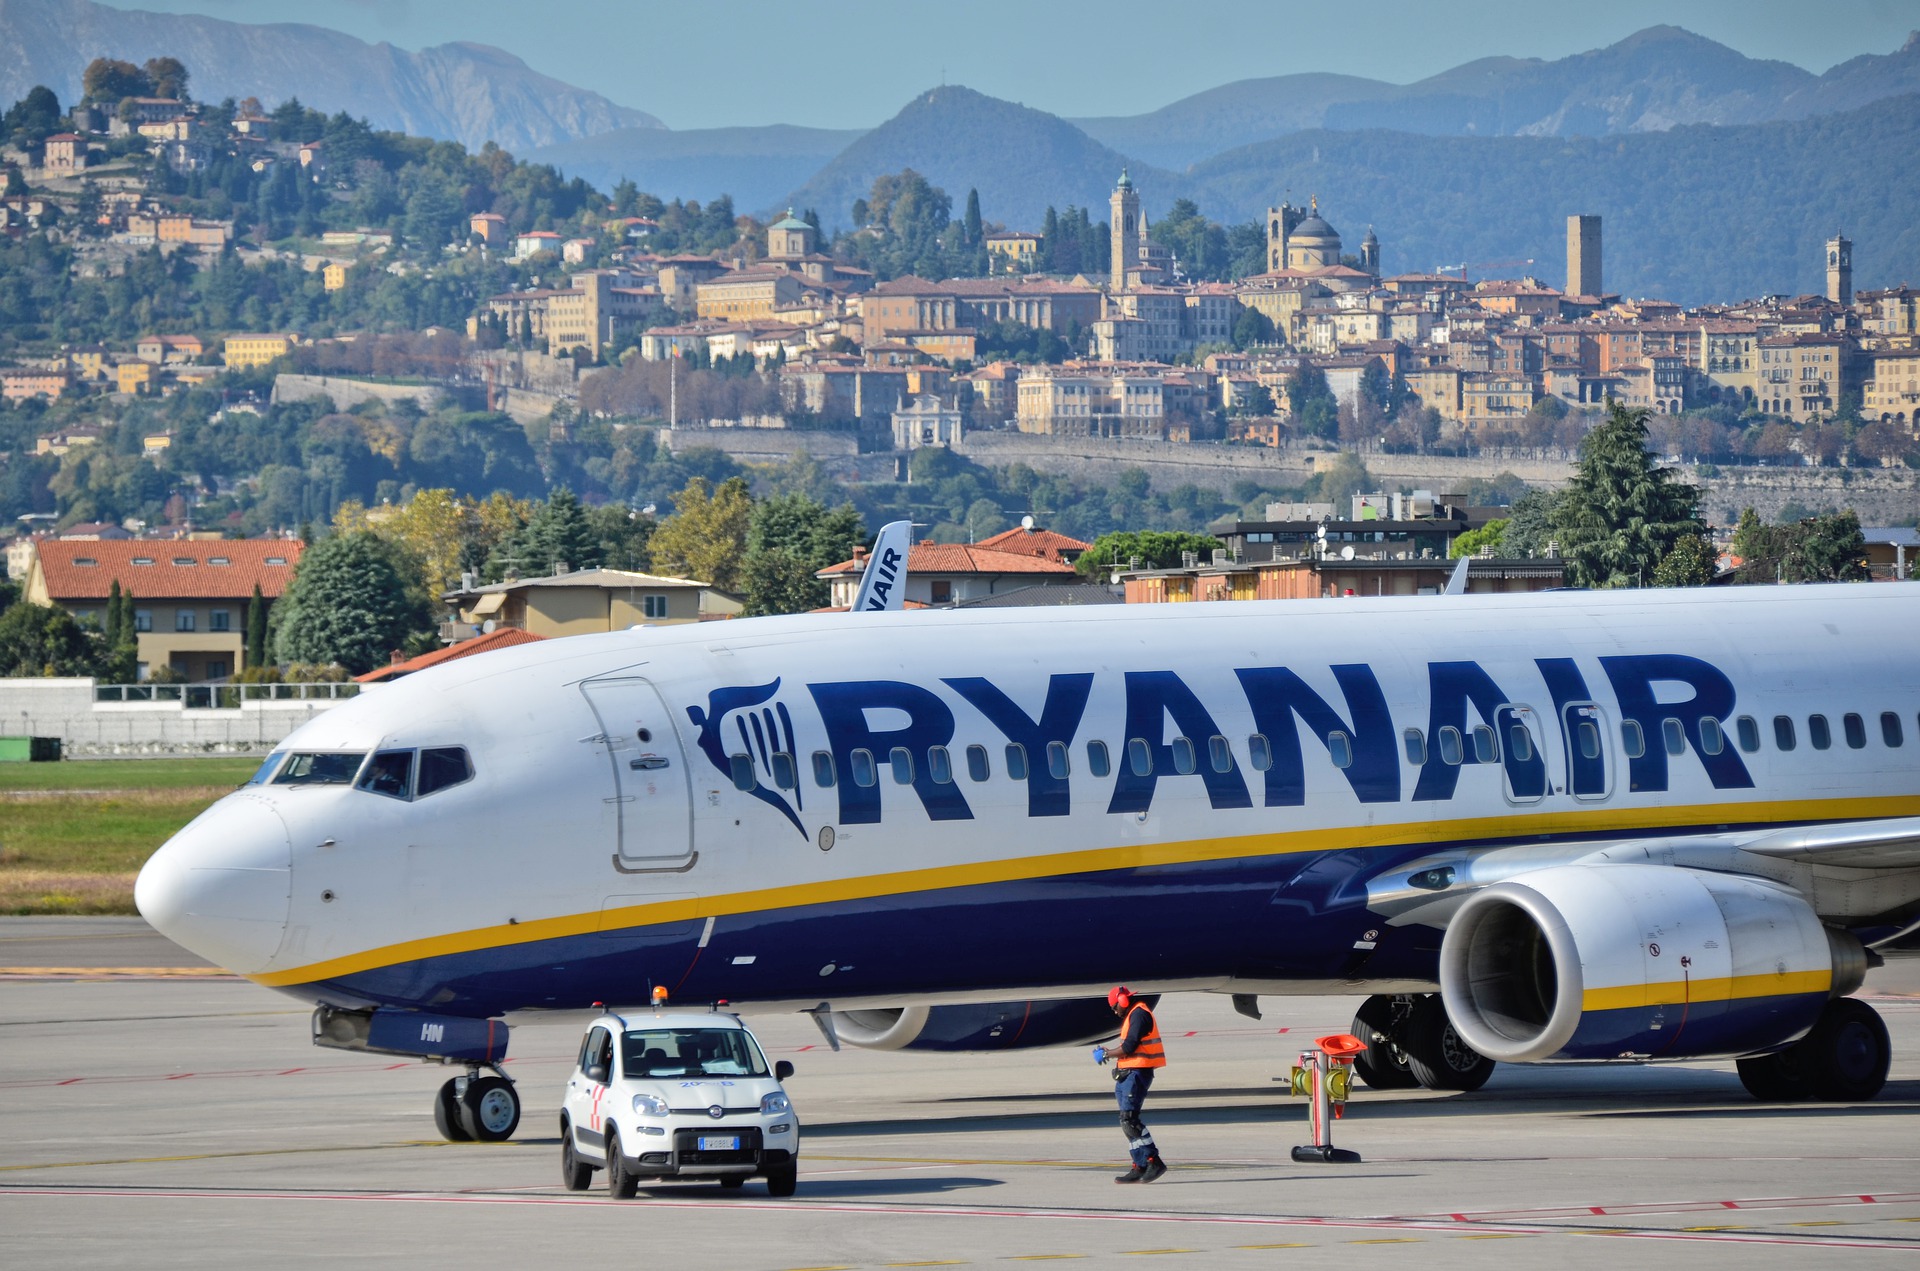 ¿Puede Ryanair enviar publicidad de sus productos sin necesidad de solicitar consentimiento previo?